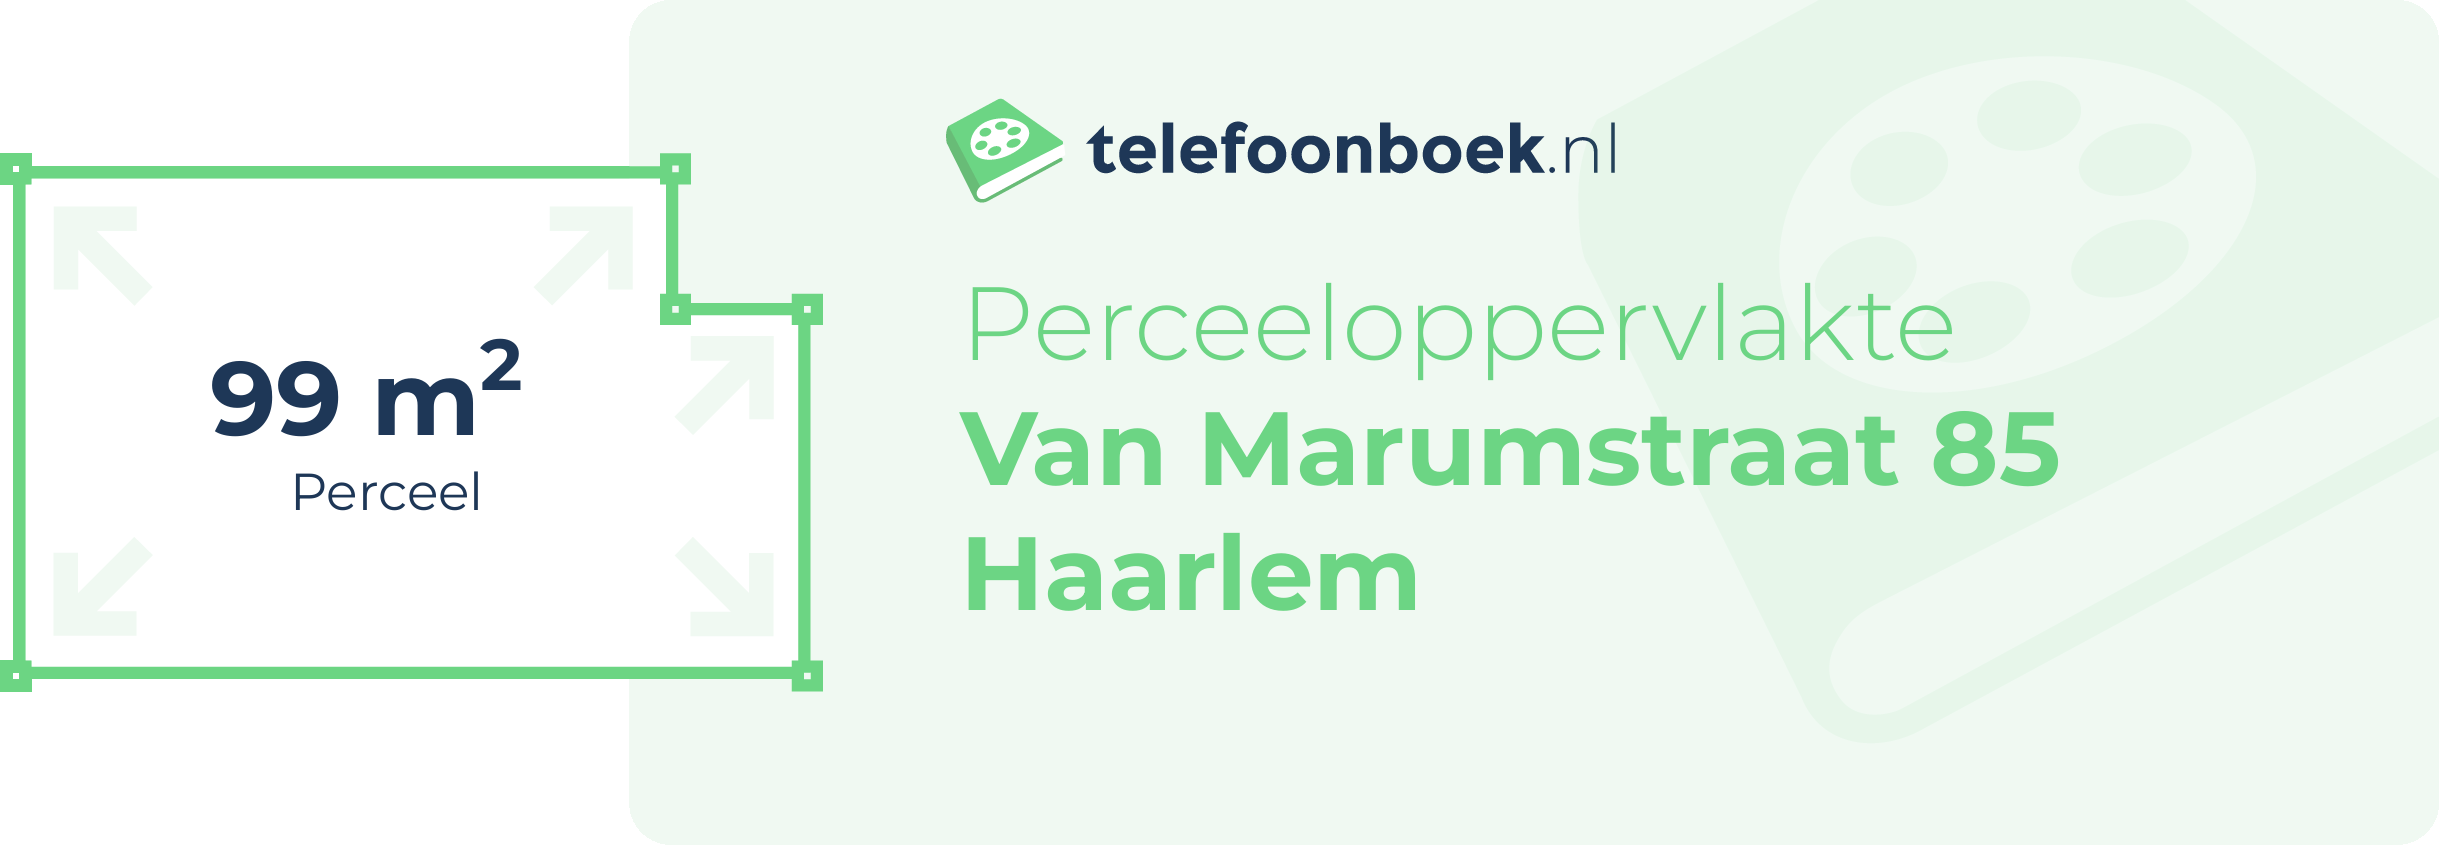 Perceeloppervlakte Van Marumstraat 85 Haarlem